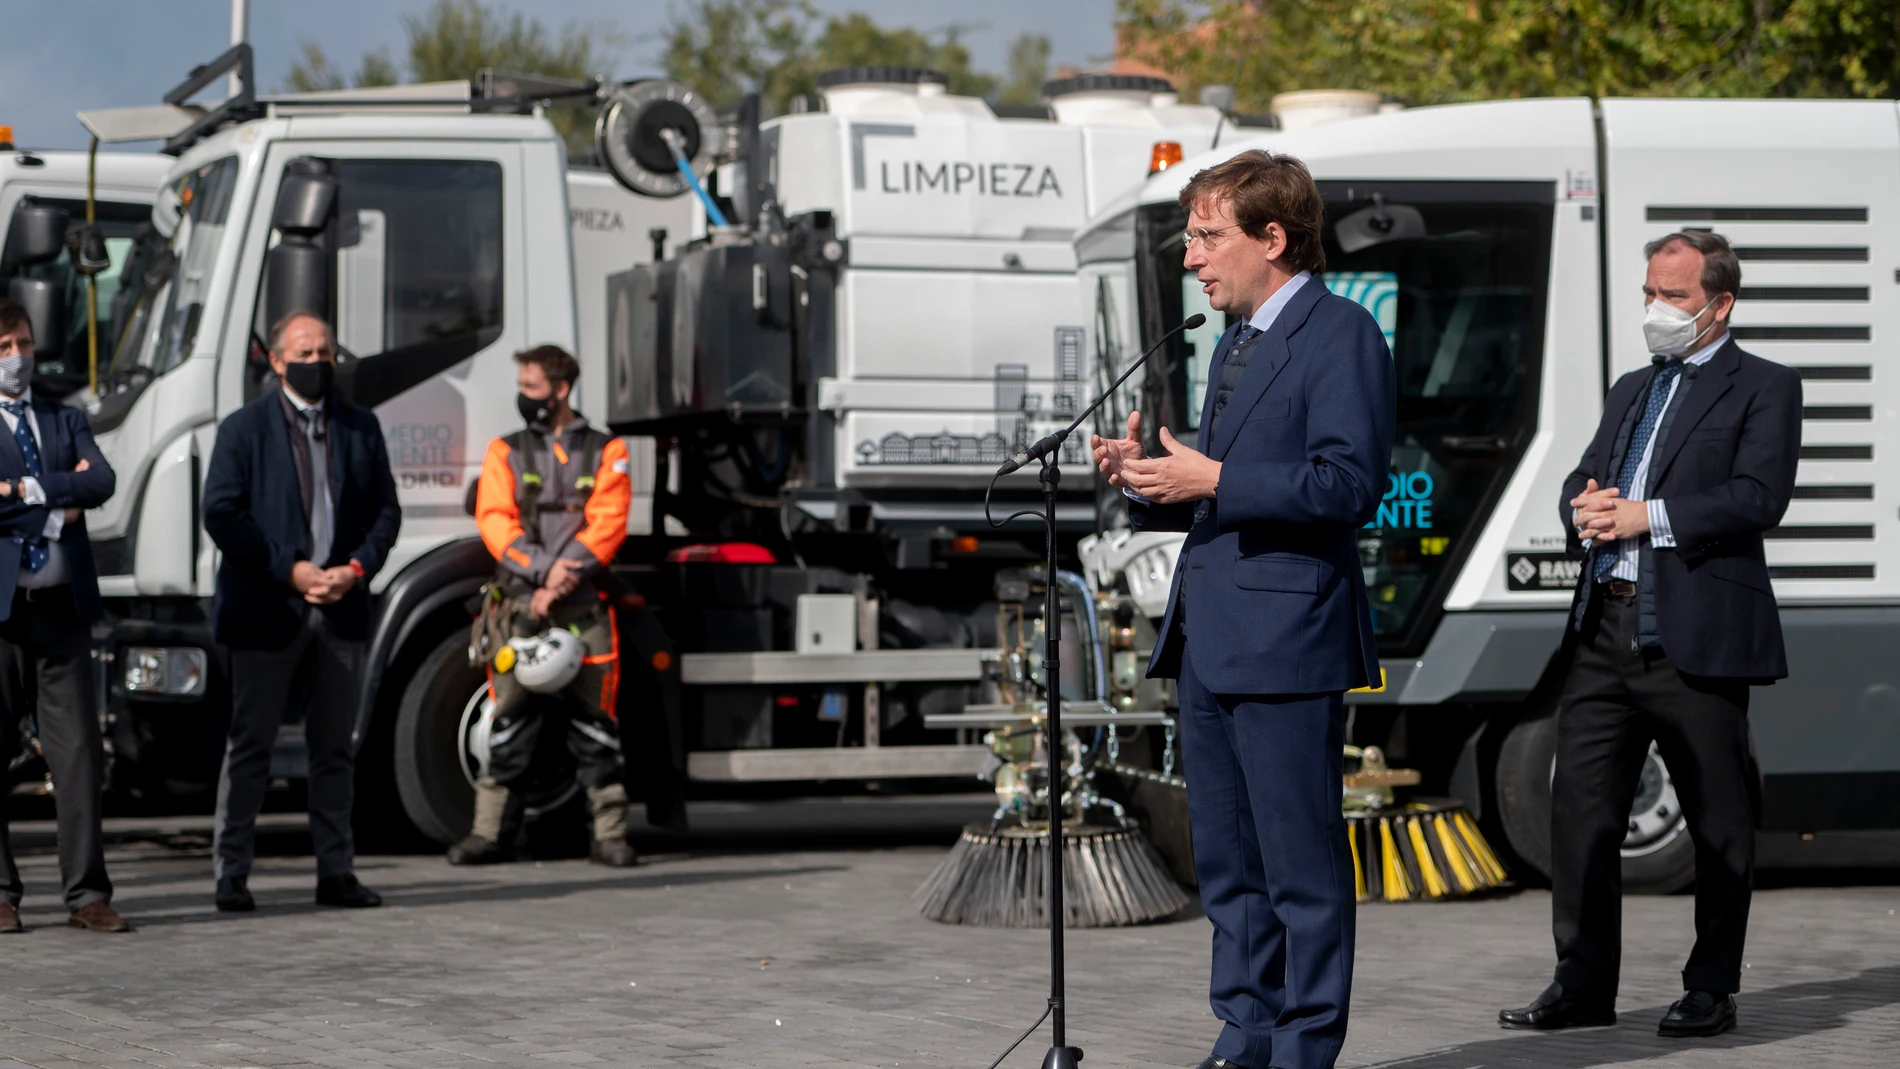 El alcalde de Madrid, José Luis Martínez-Almeida, presenta la nueva imagen y maquinaria de los servicios de limpieza y zonas verdes